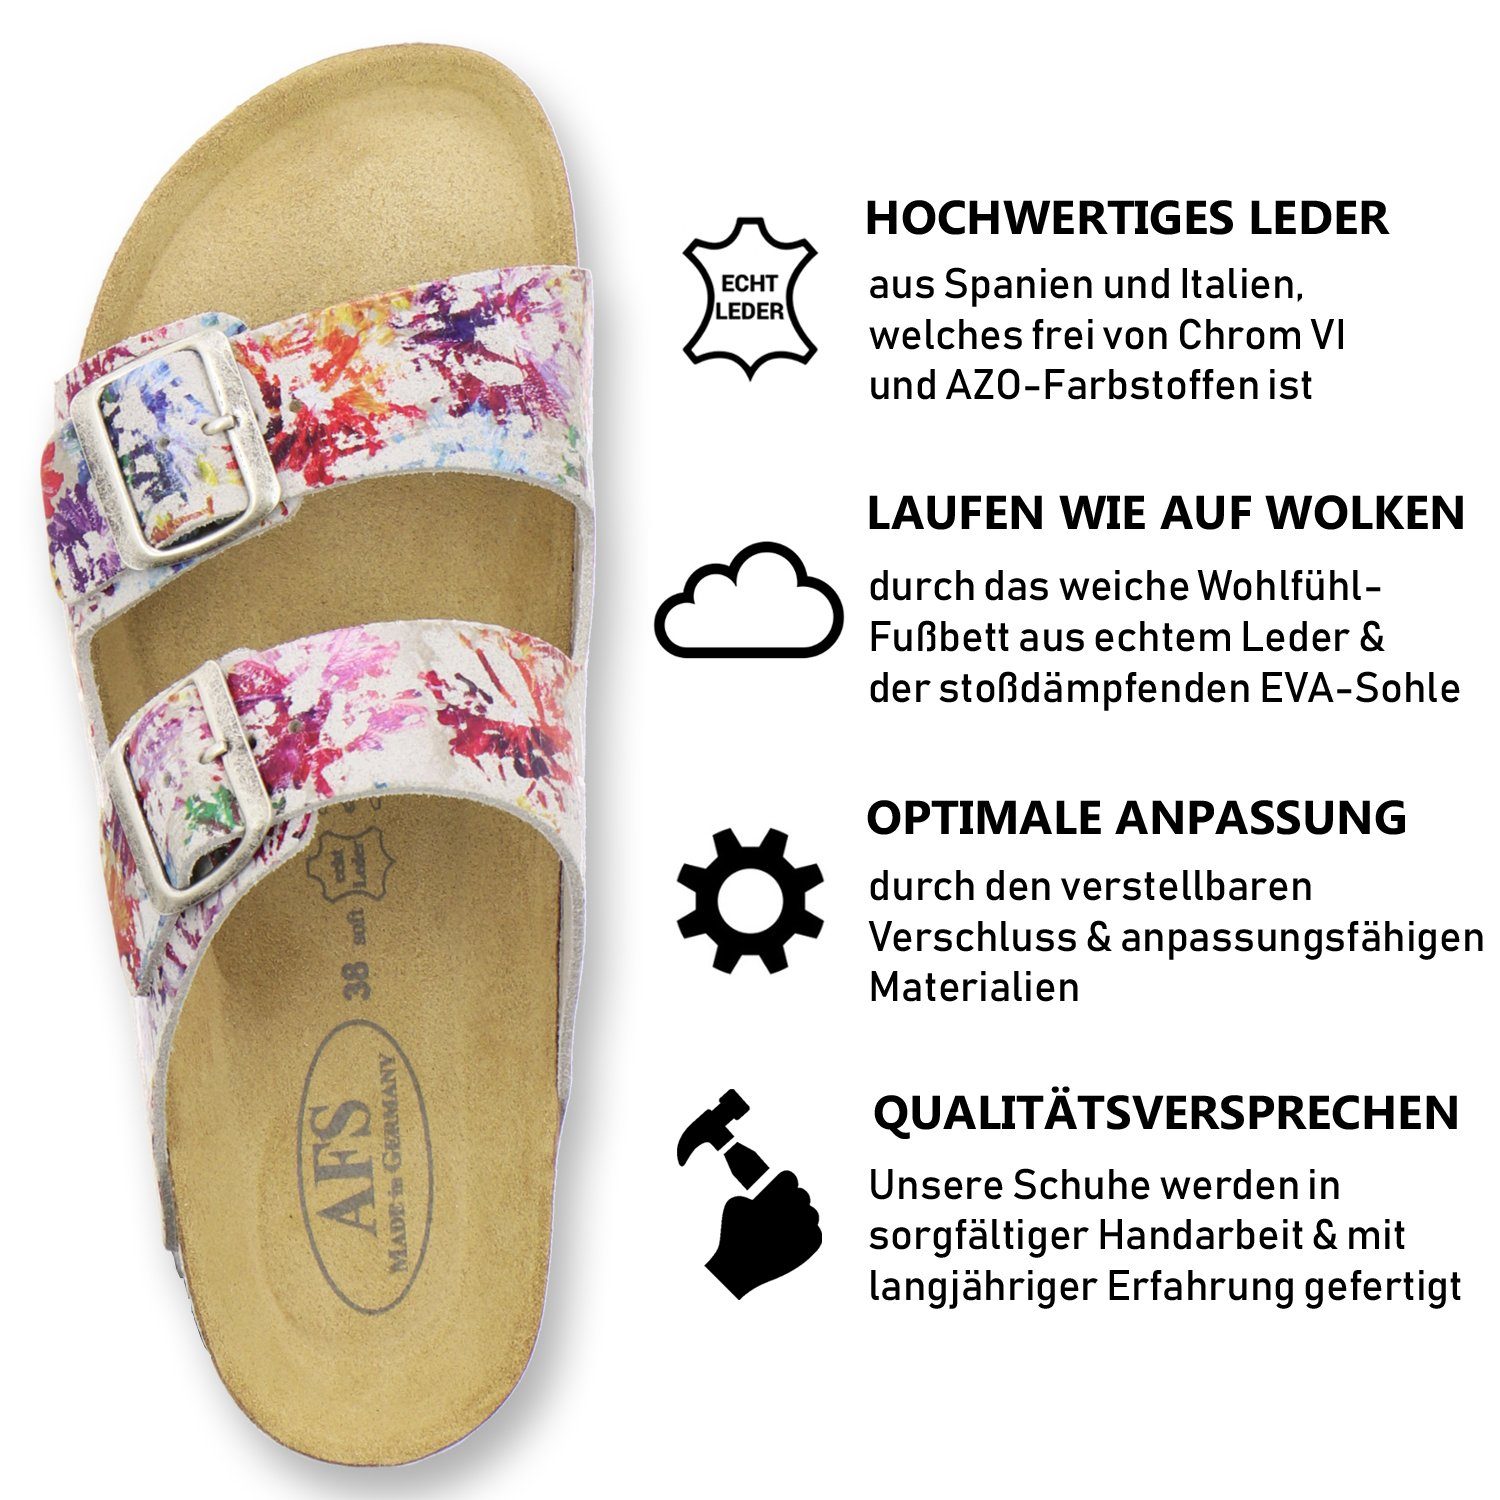 Germany mit Damen in aus Fussbett, 2100 Made Leder AFS-Schuhe Pantolette paint Leder für